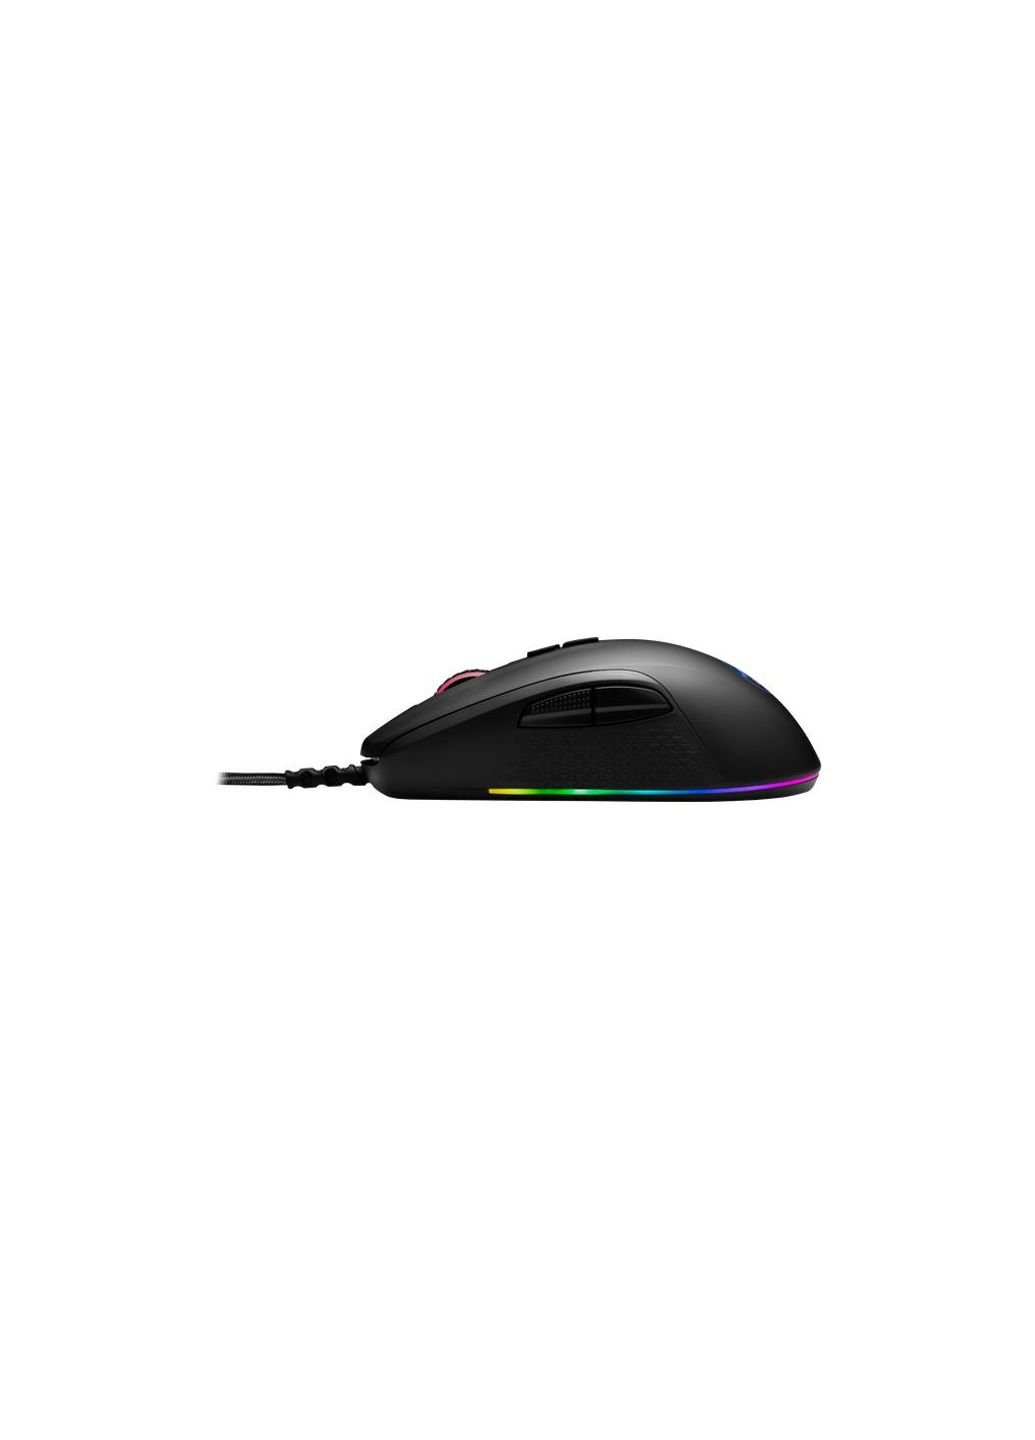 Мышка Stormrage RGB IR USB Black (78259) Redragon (253547211)